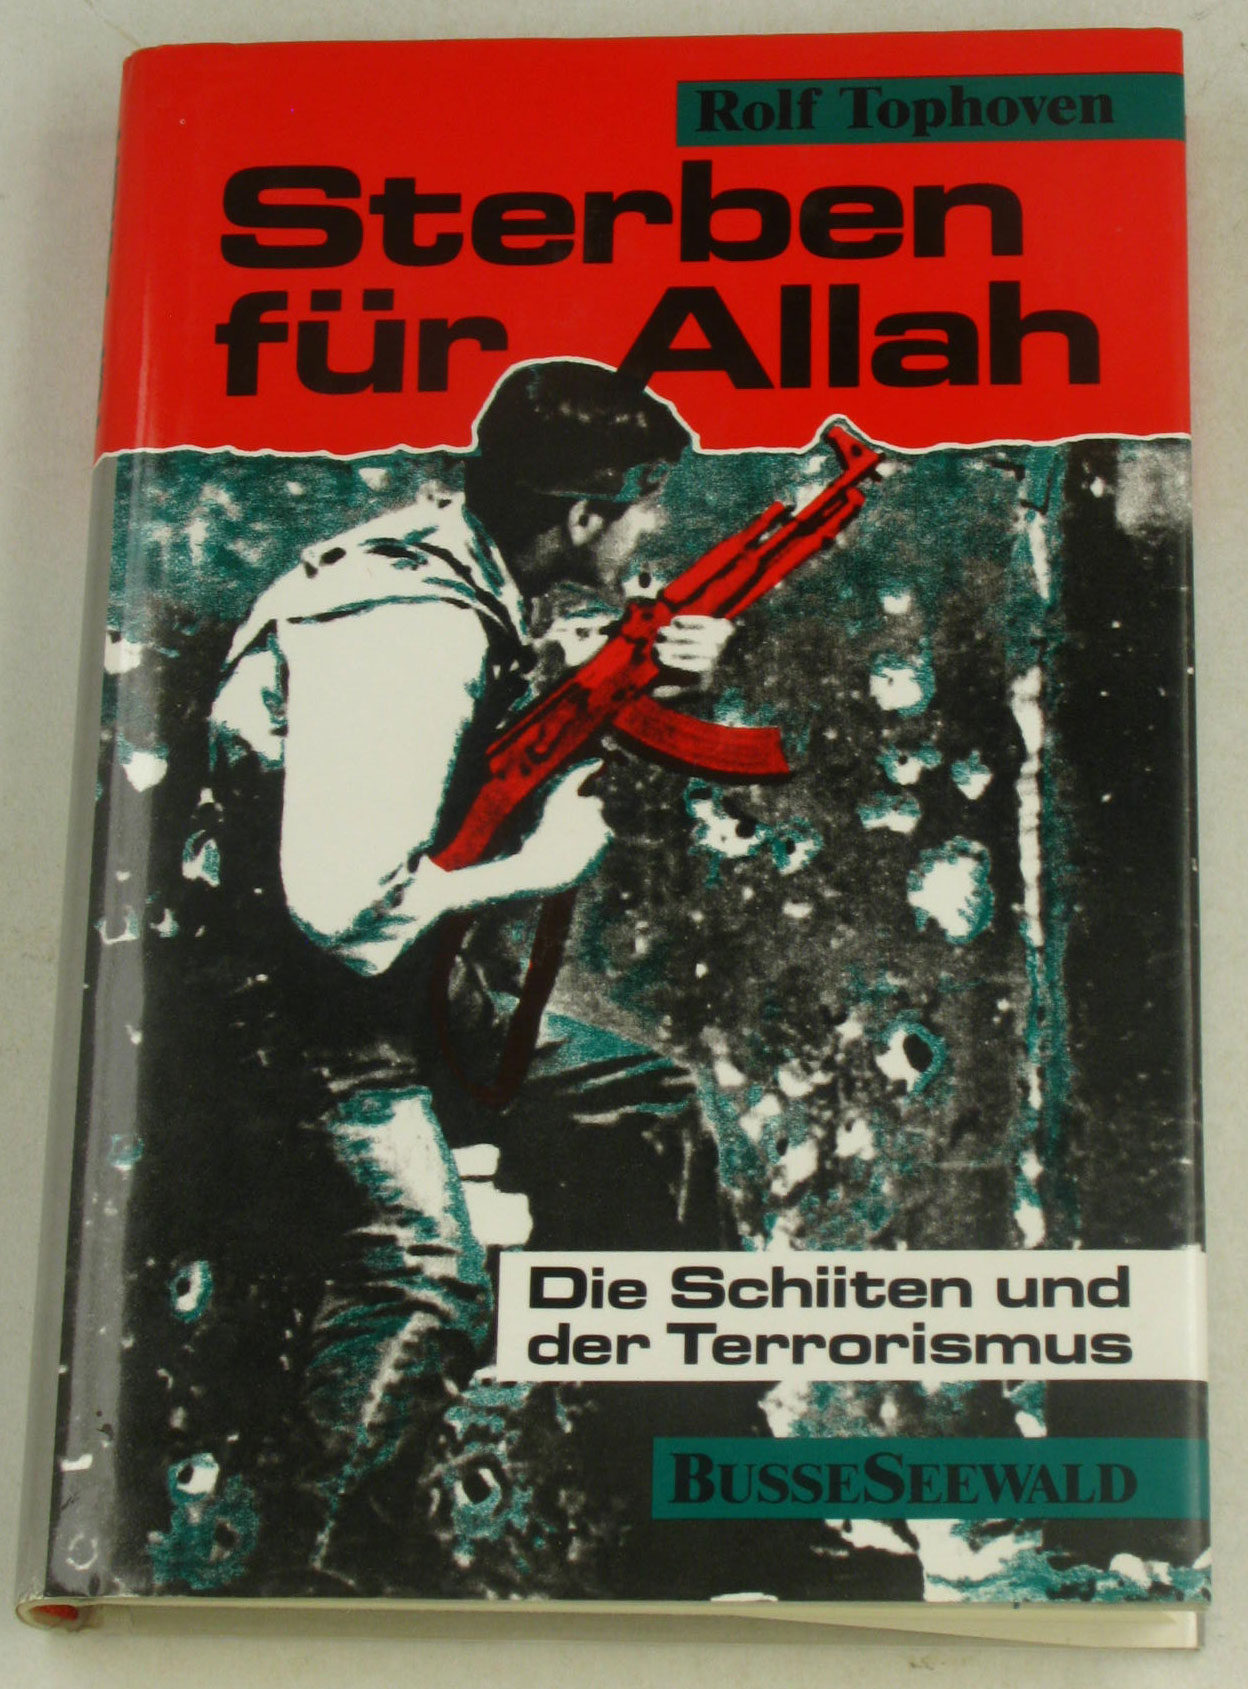 Tophoven, Rolf:  Sterben für Allah. Die Schiiten und der Terrorismus. 